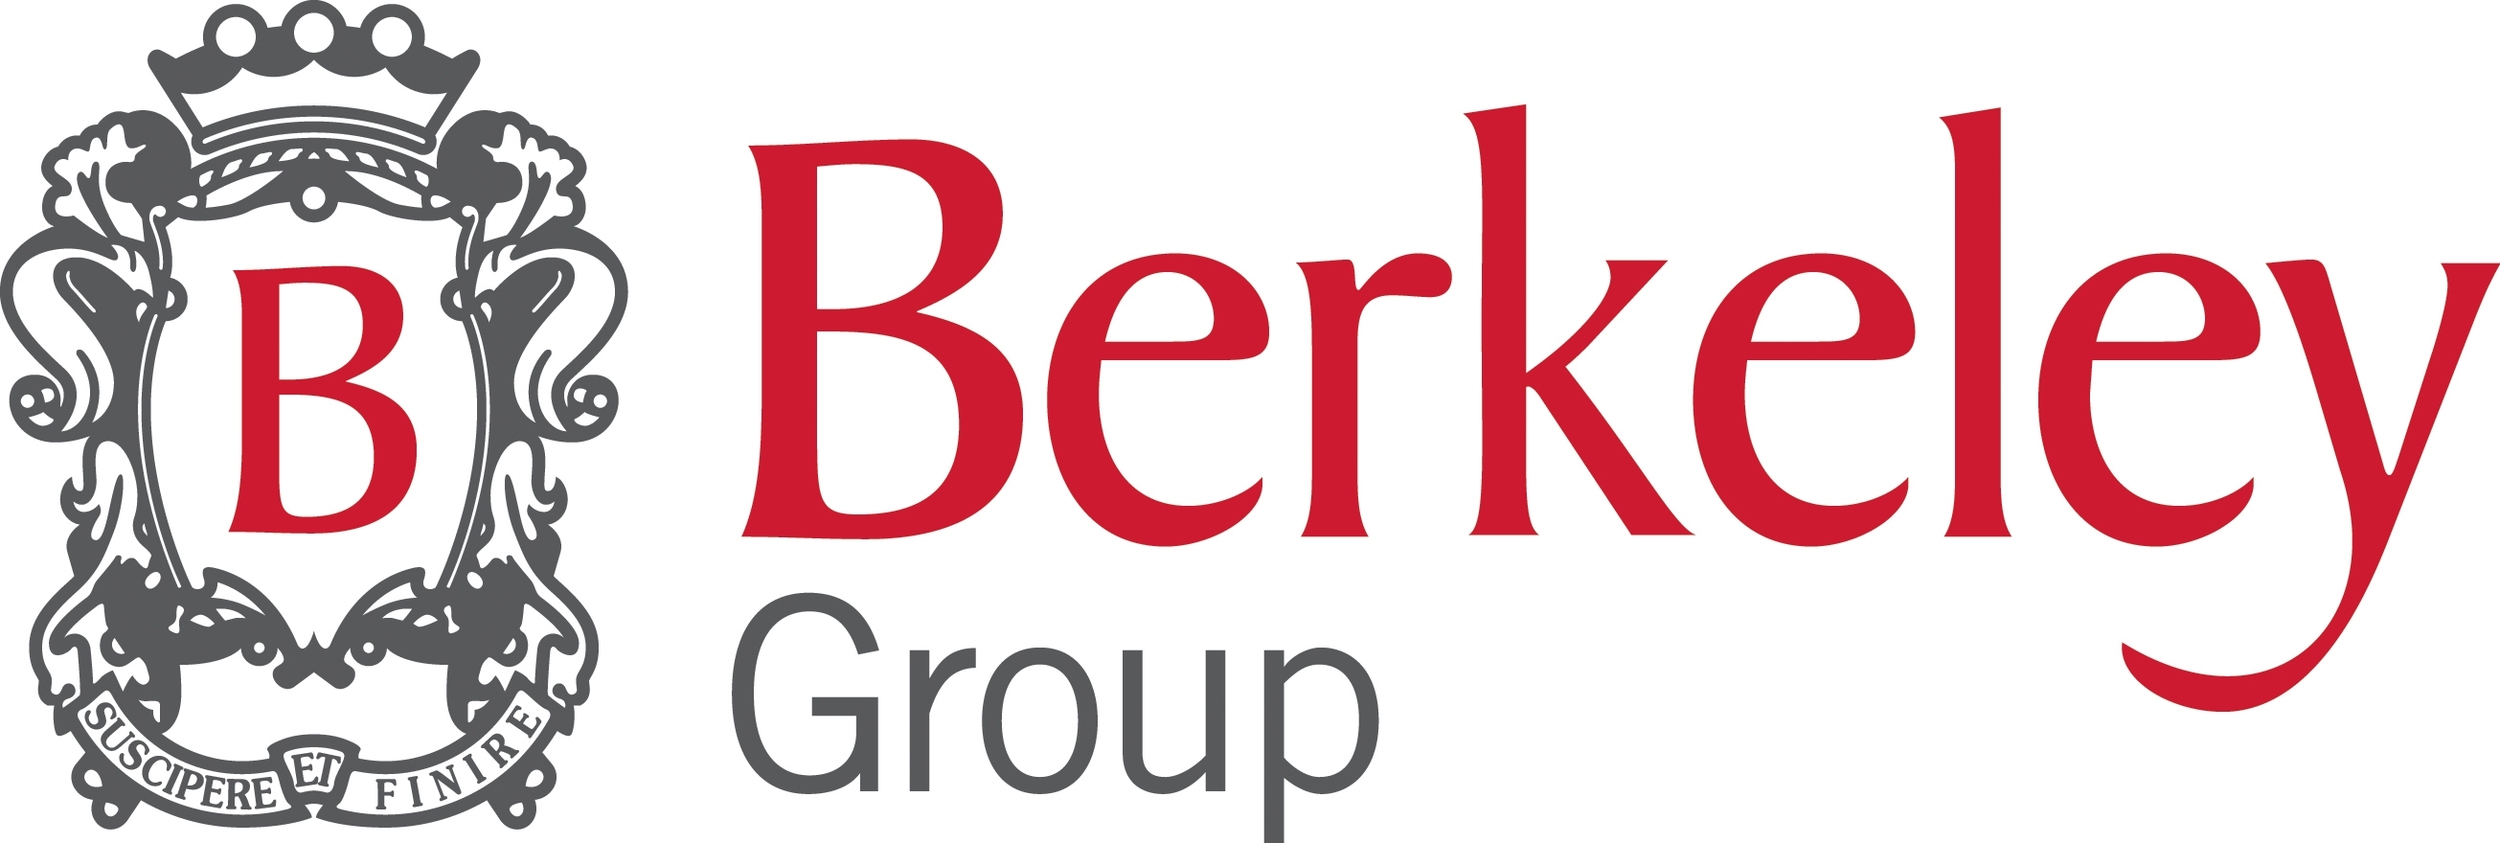 berkeley-group-logo.jpg